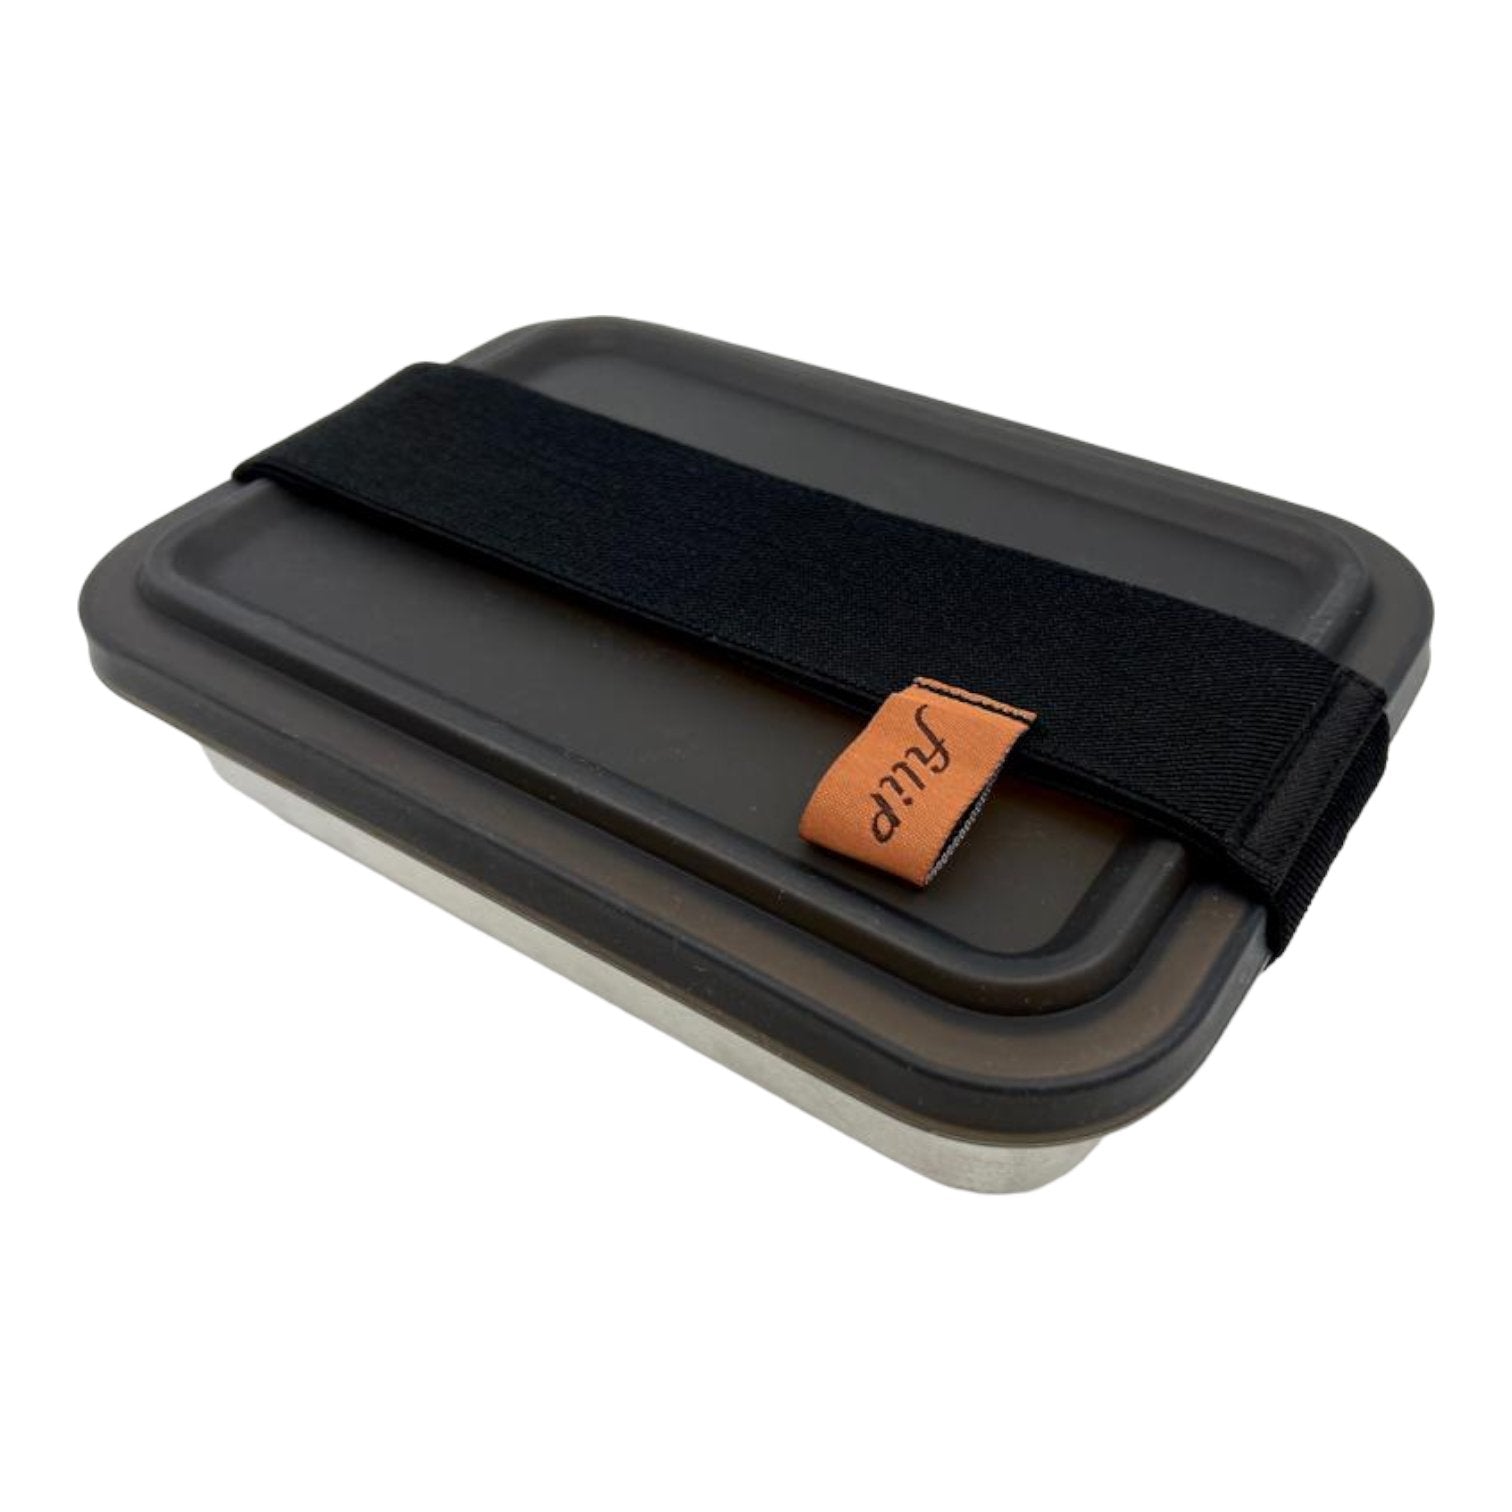 Edelstahl Lunchbox filip® 4er Set mit Sleeve und Besteckfach - #shop_name